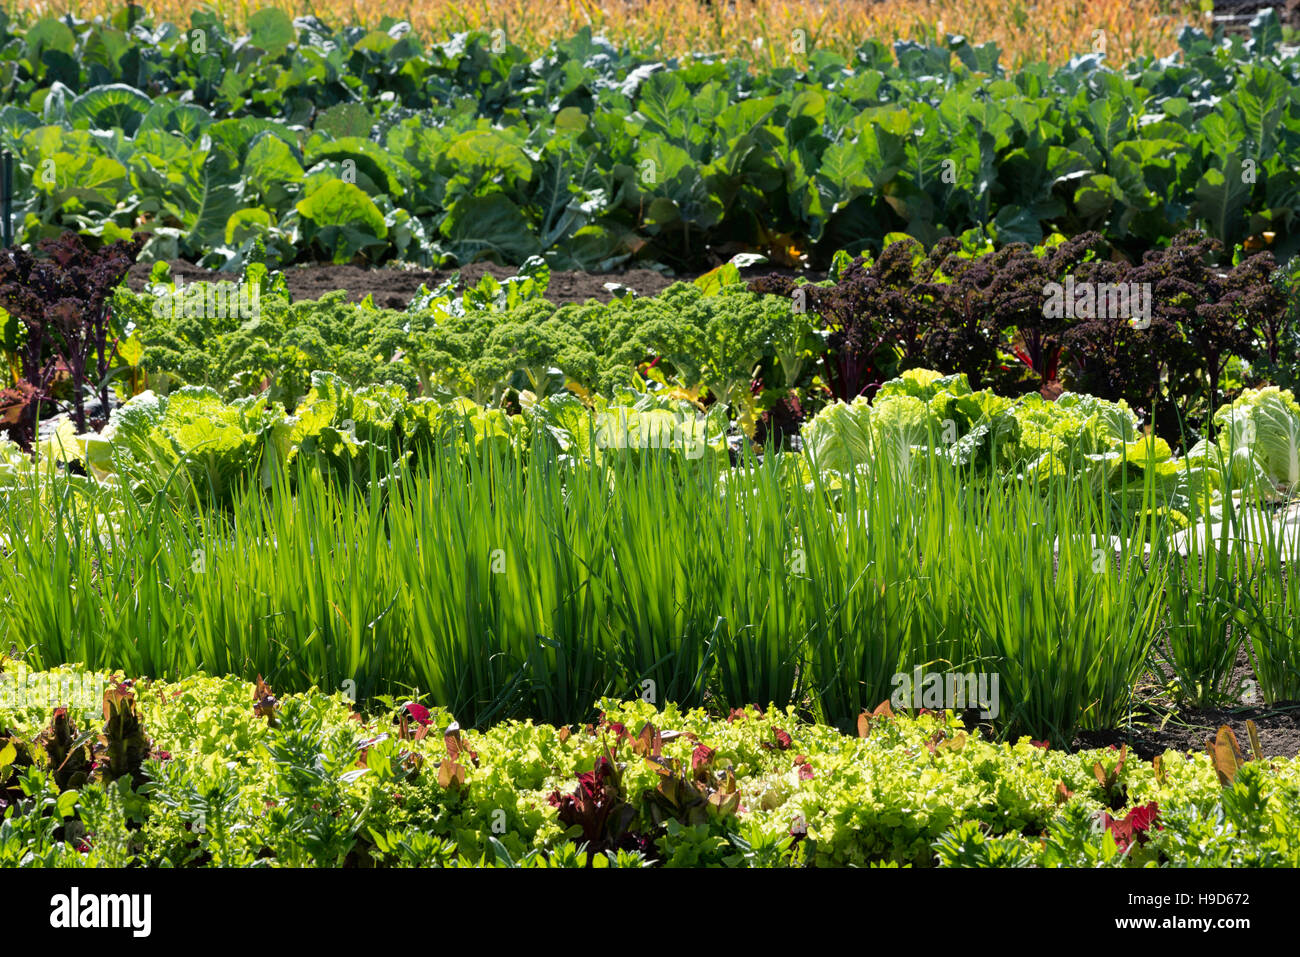 Reihen von Kopfsalat, Grünkohl, Frühlingszwiebeln und Kohl wächst in einem Garten in Oregon Wallowa Valley. Stockfoto